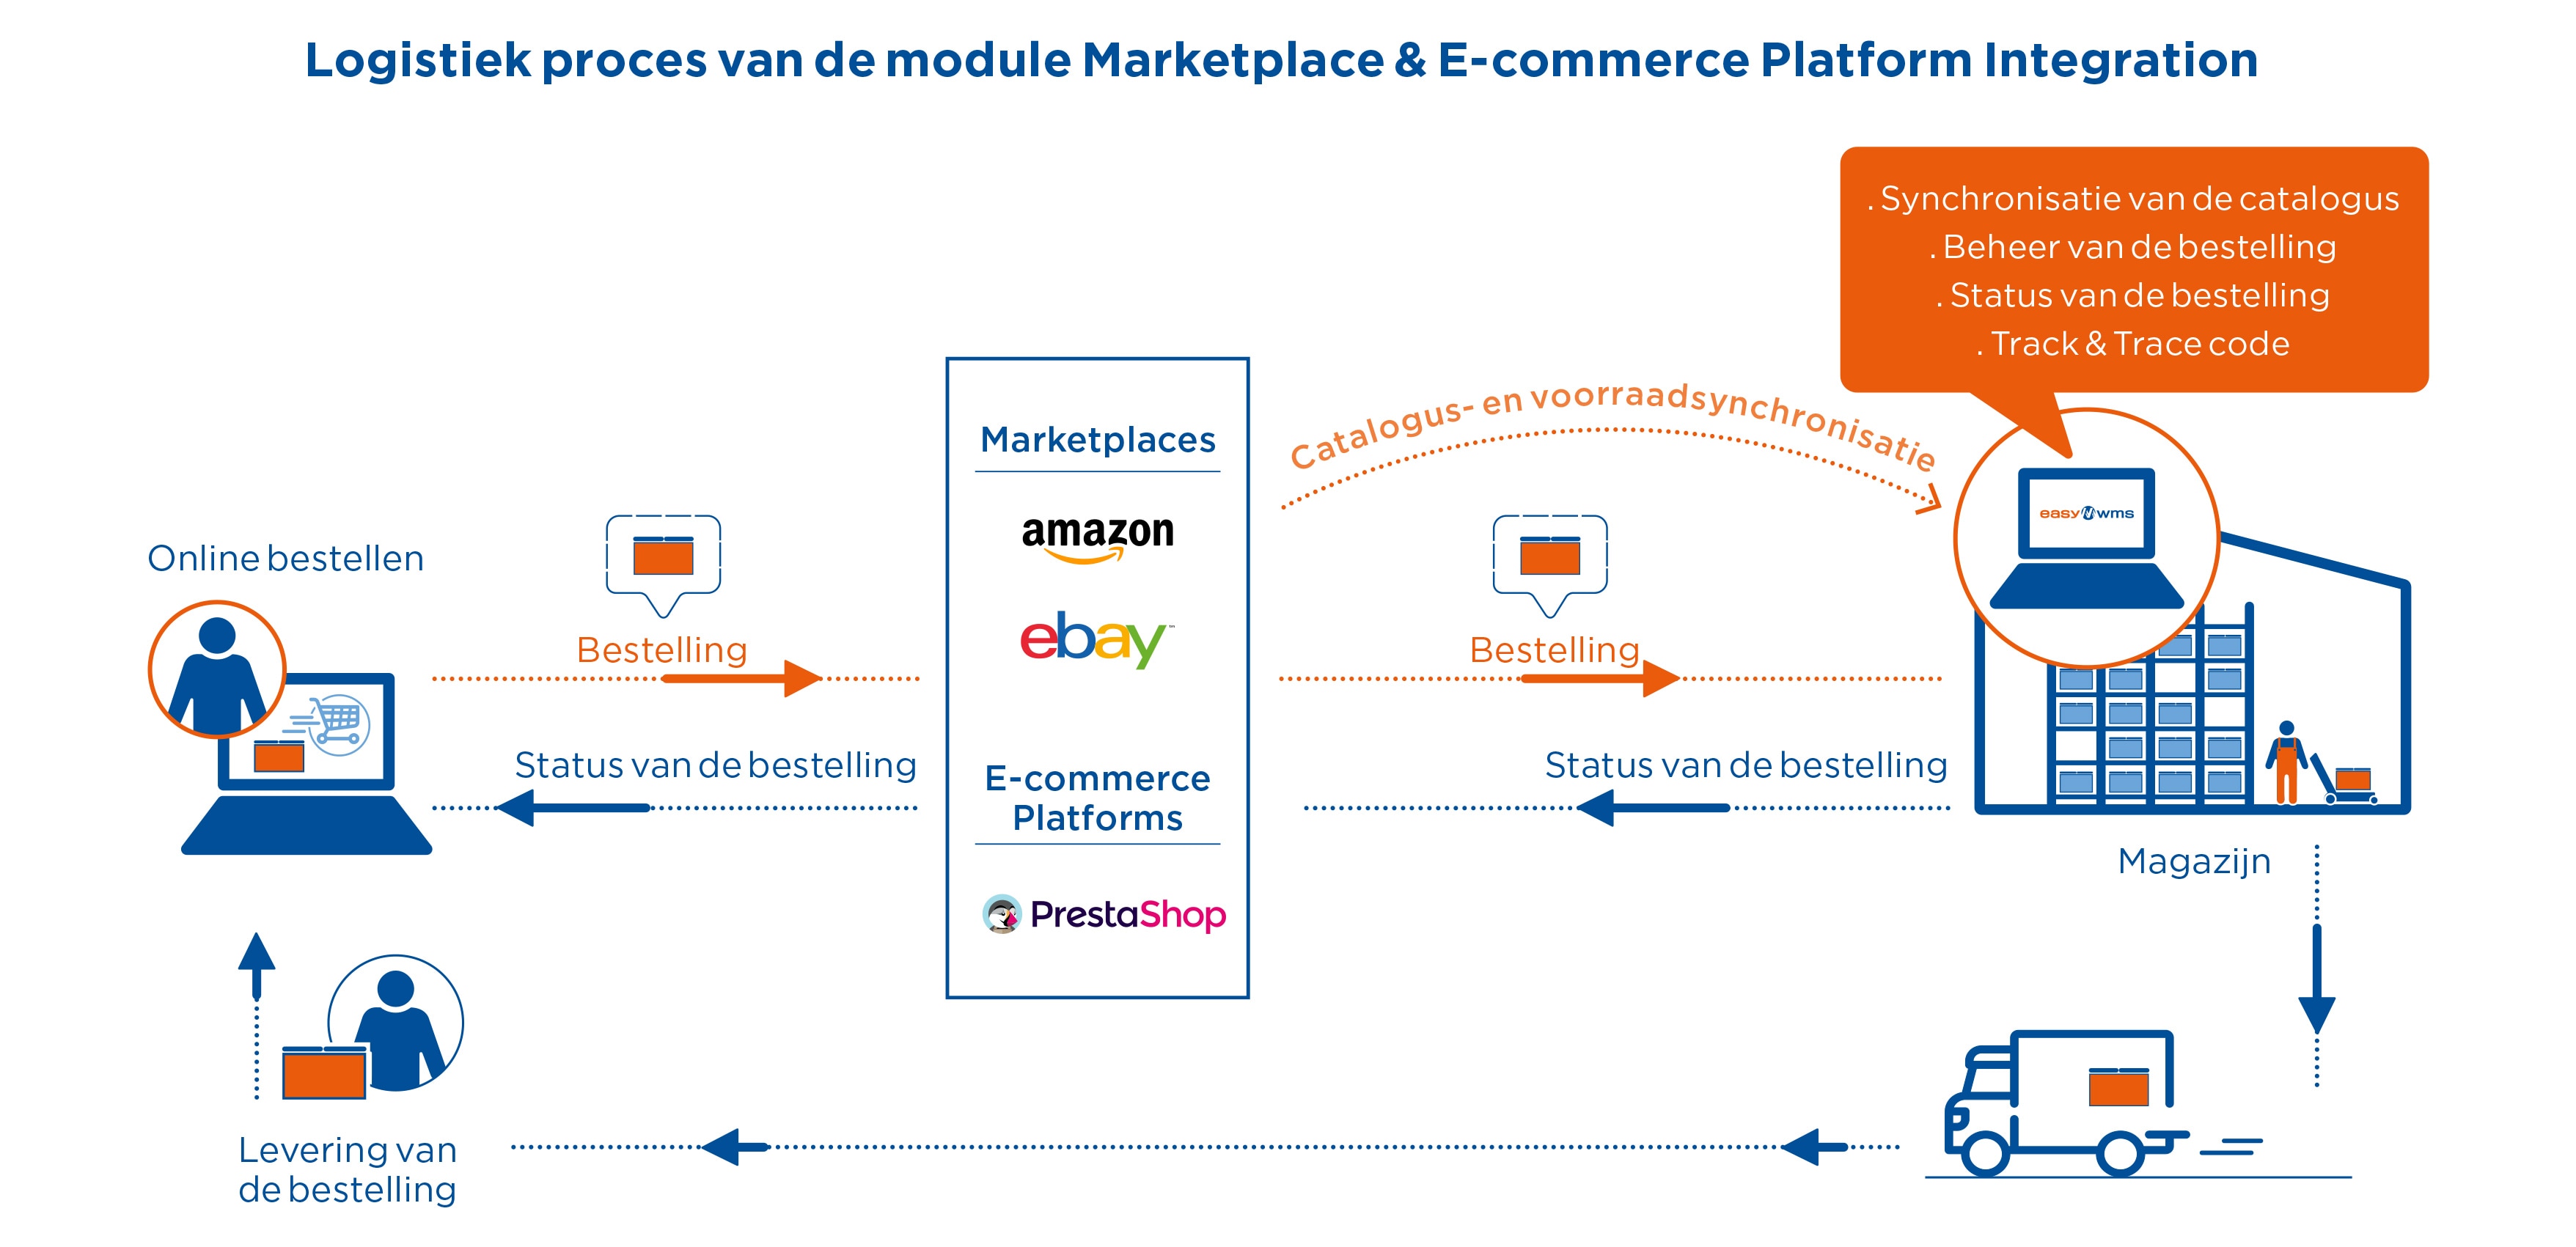 Logistiek proces van de module Marketplace & E-commerce Platform Integration